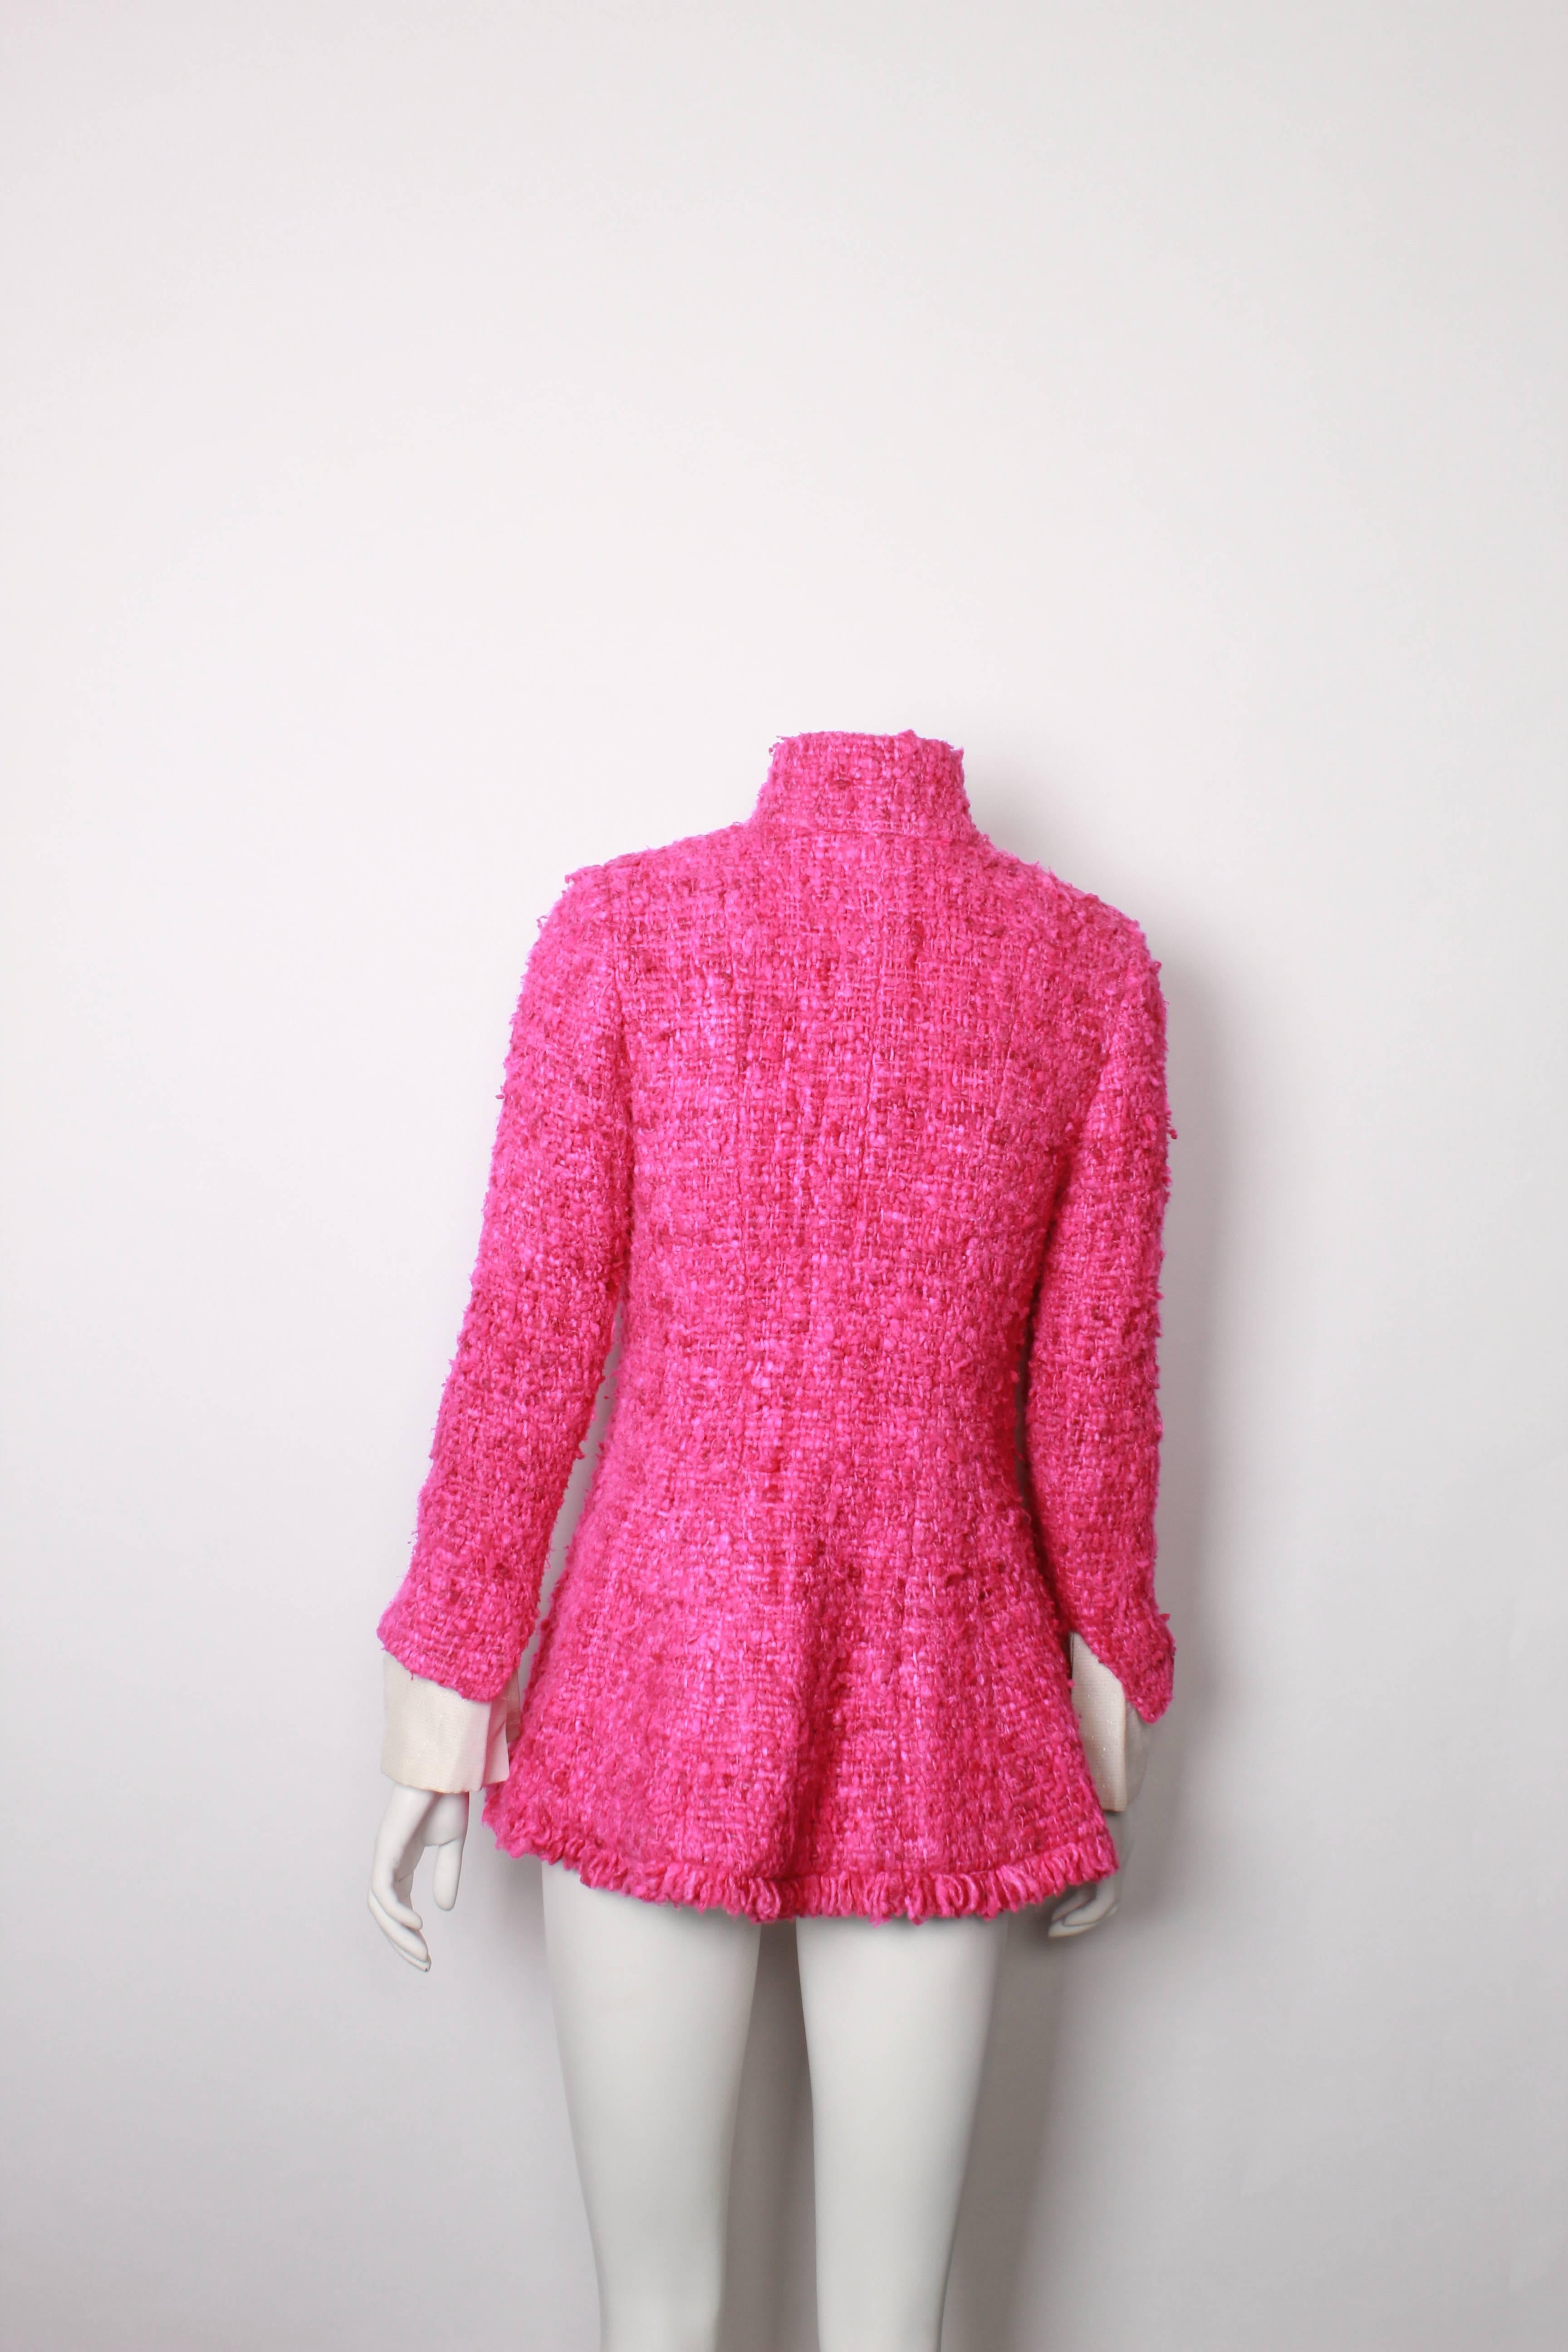 Chanel Maharaja Tweed Jacket, 2012  1